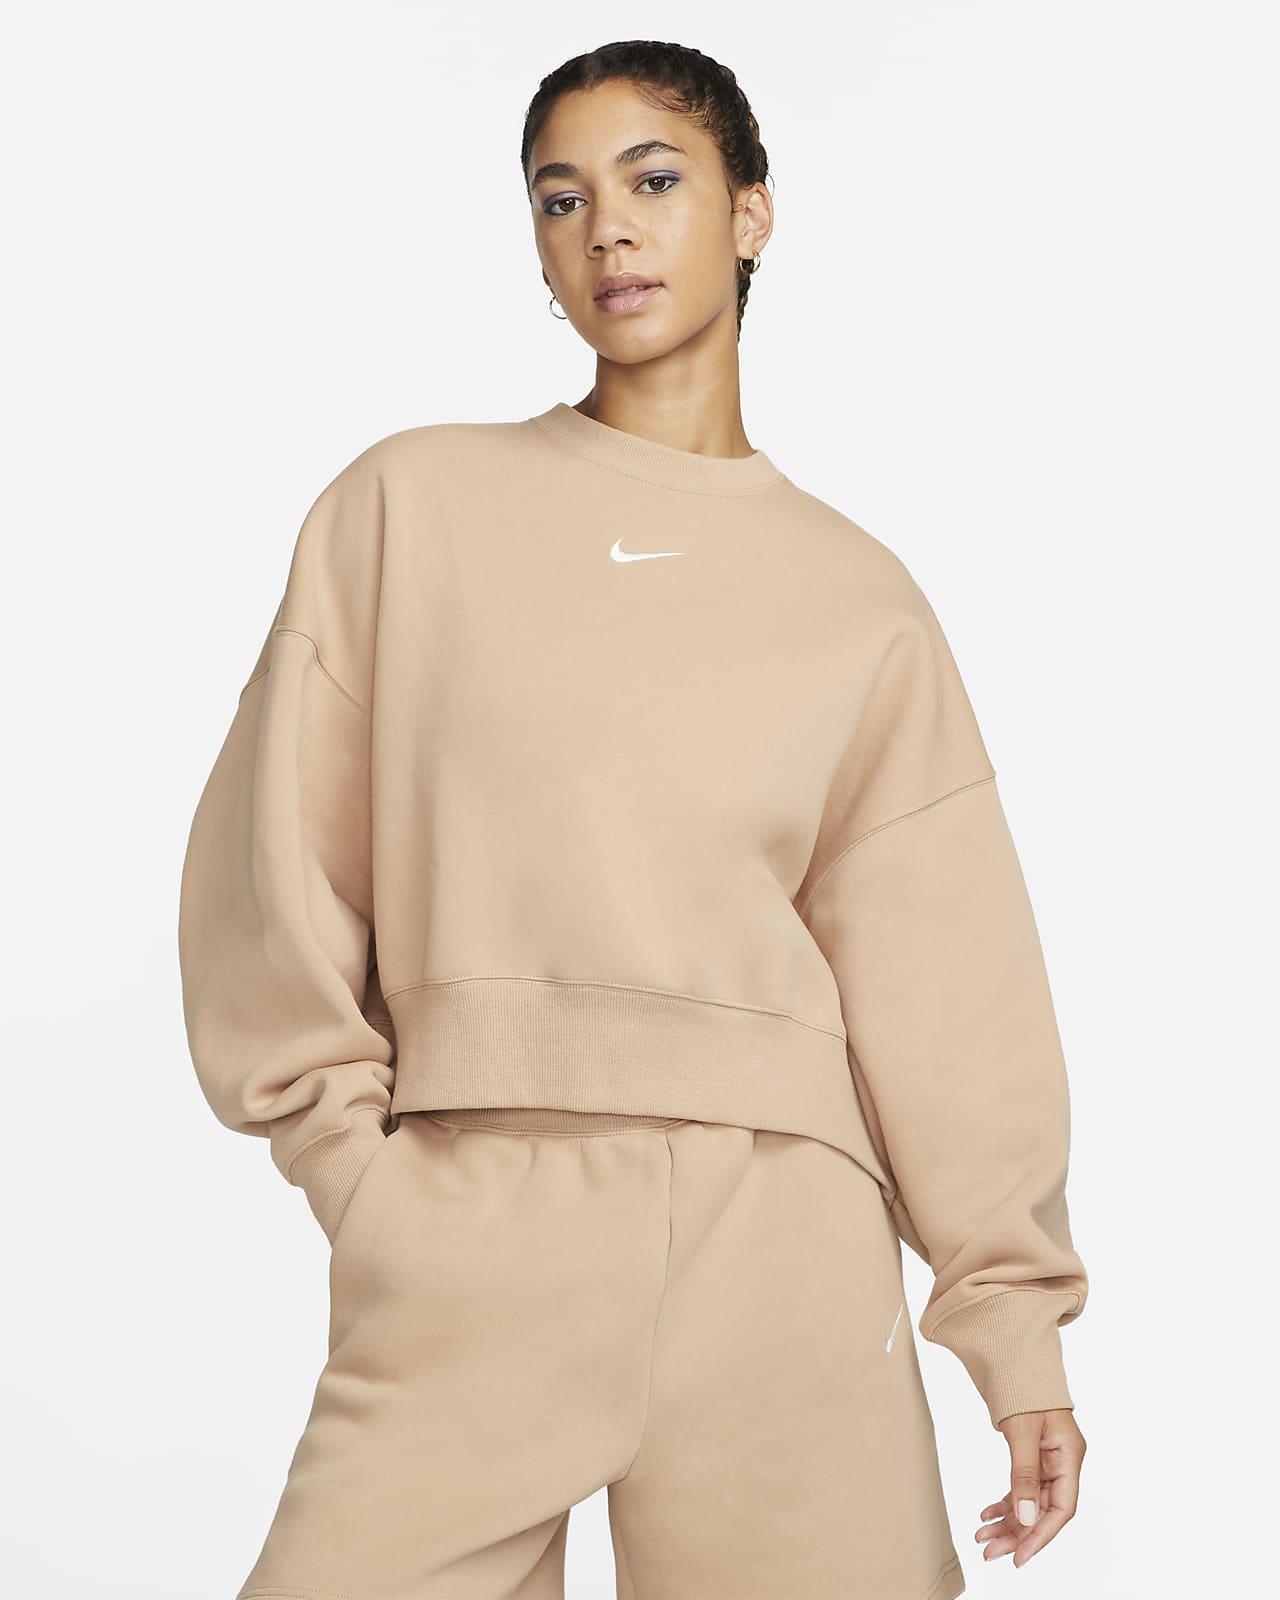 Survêtement taille haute Nike Sportswear Phoenix Fleece pour Femme. Nike LU